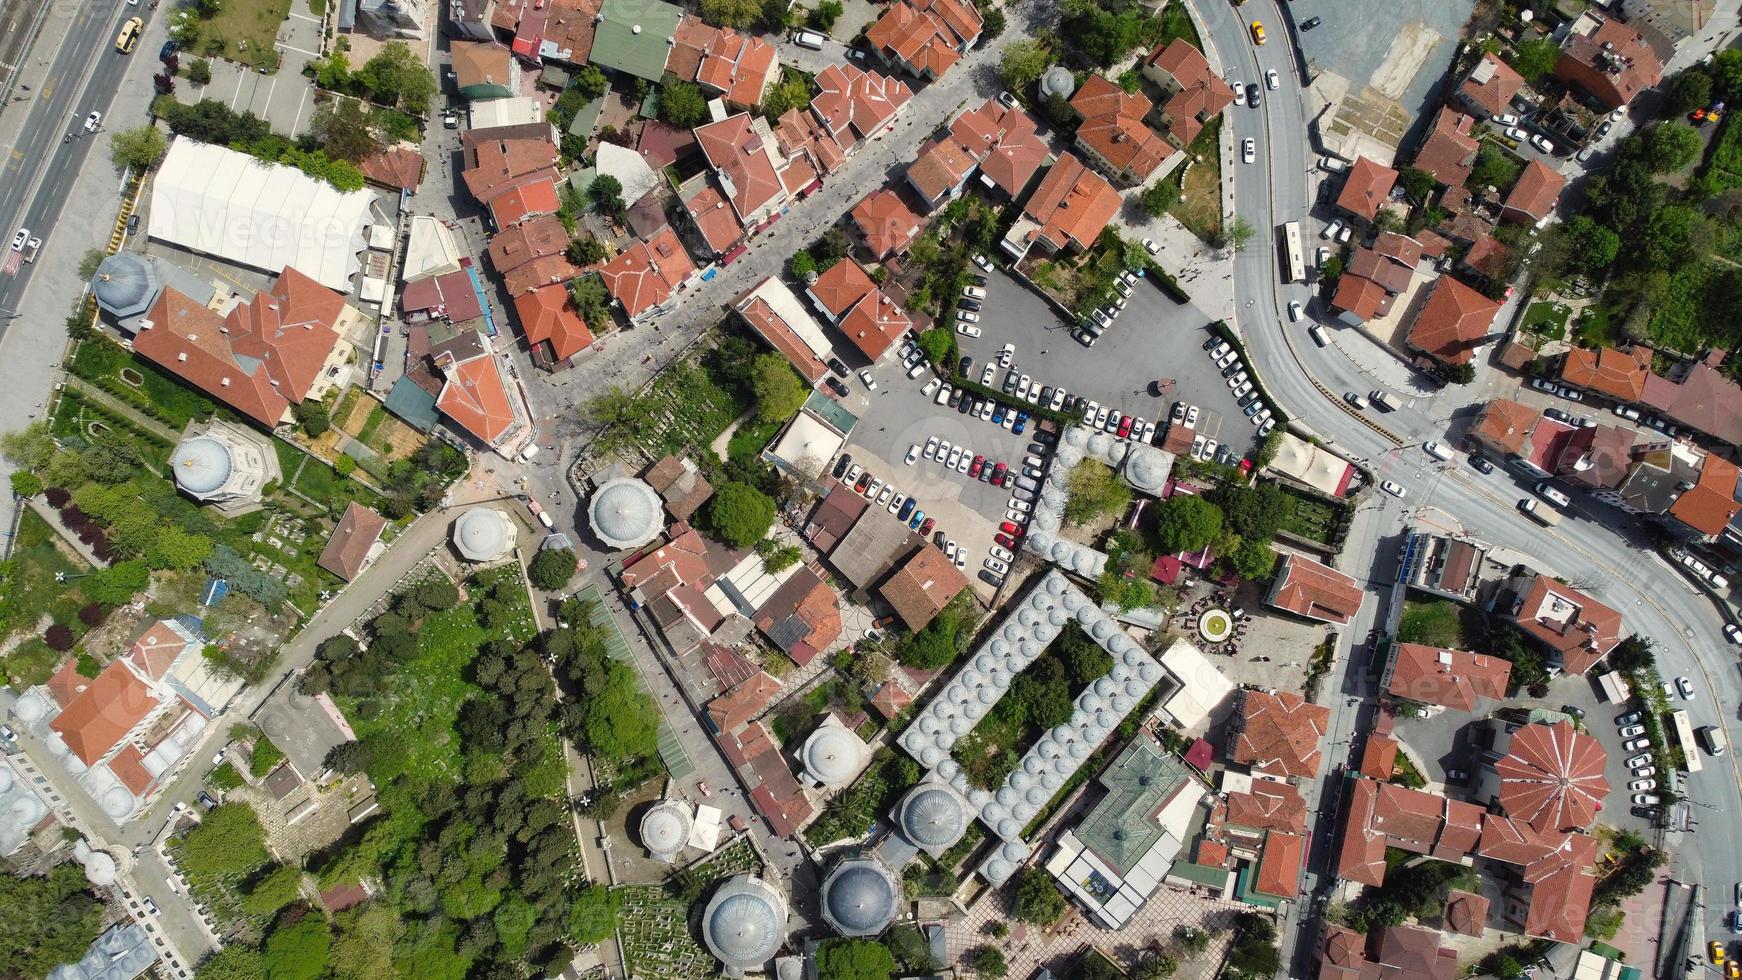 maisons résidentielles de la ville d'istanbul, vue en grand angle réalisée par la caméra d'un drone, images aériennes photo